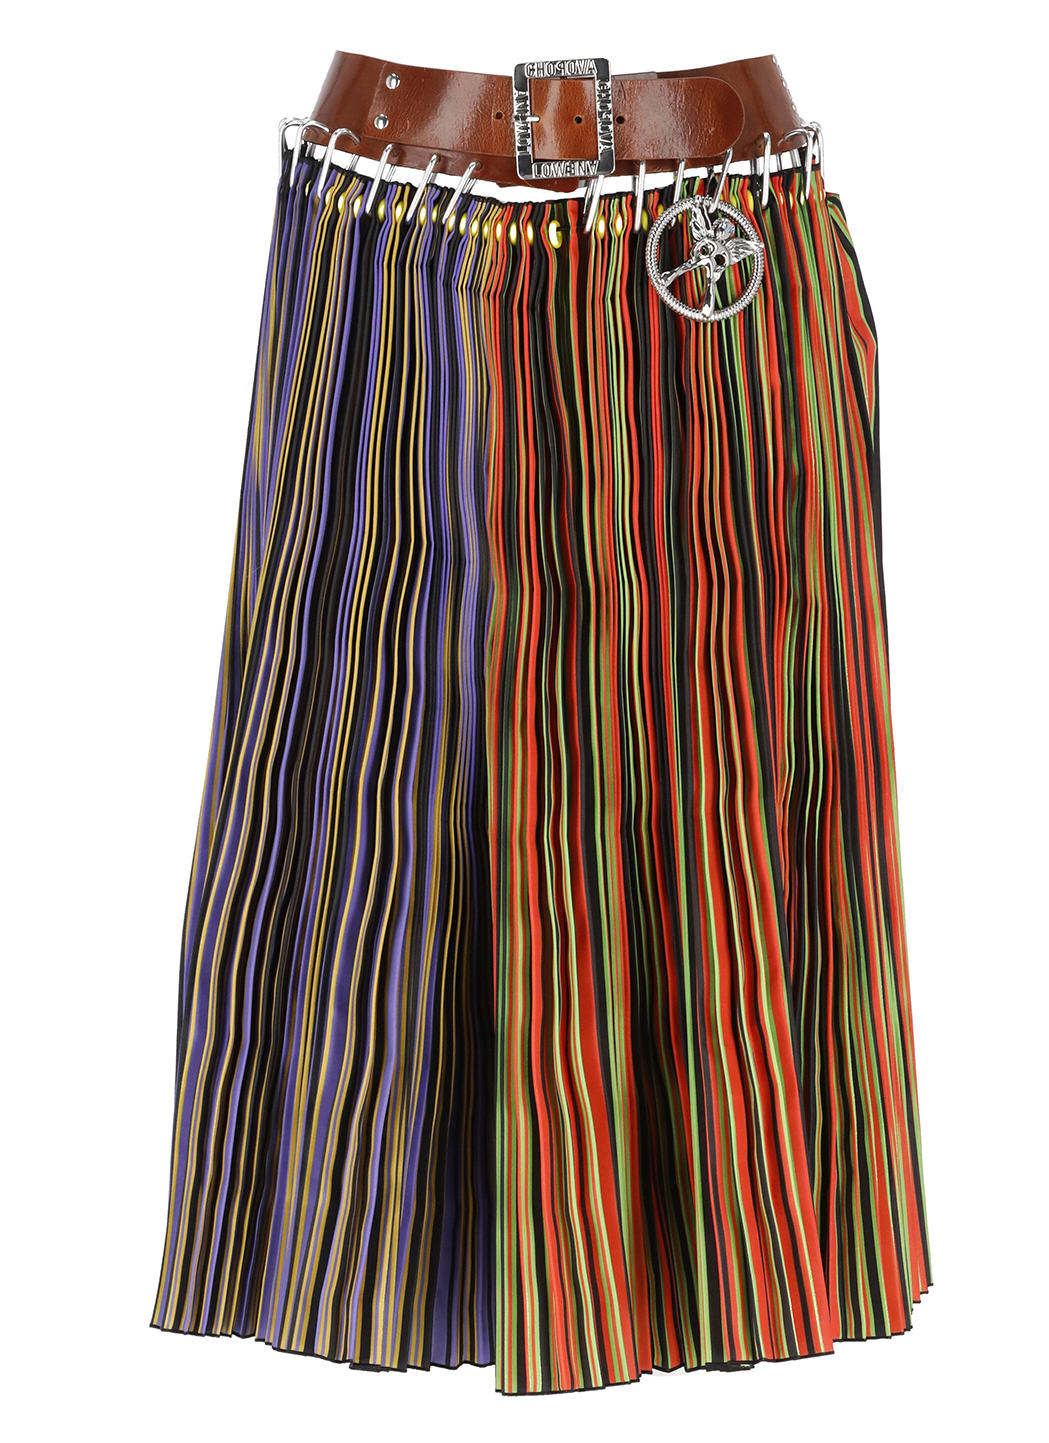 Chopova Lowena Pleated Long Skirt With Belt